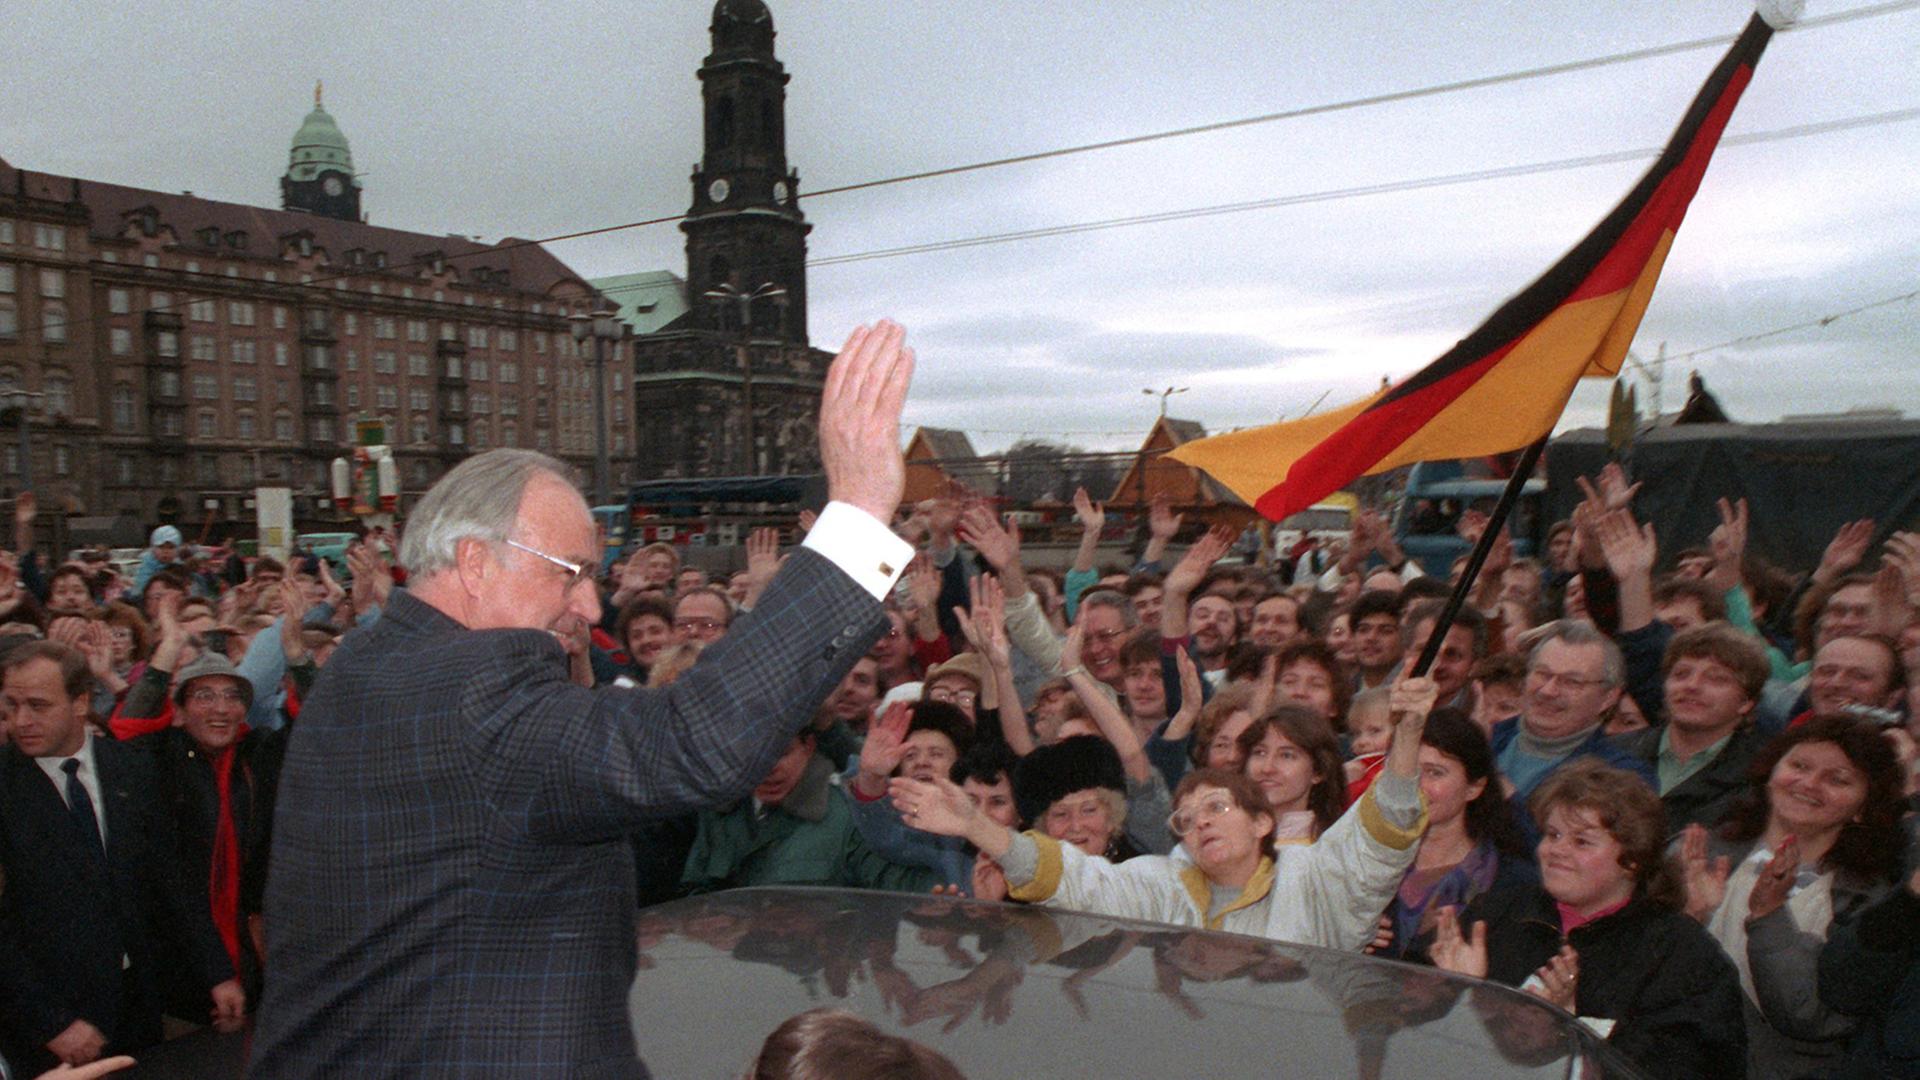 Bundeskanzler Helmut Kohl (CDU) wird am 19. Dezember 1989 anlässlich seines zweitägigen Besuches in der sächsischen Stadt Dresden vor der Kreuzkirche von einer wartenden Menschenmenge stürmisch gefeiert.